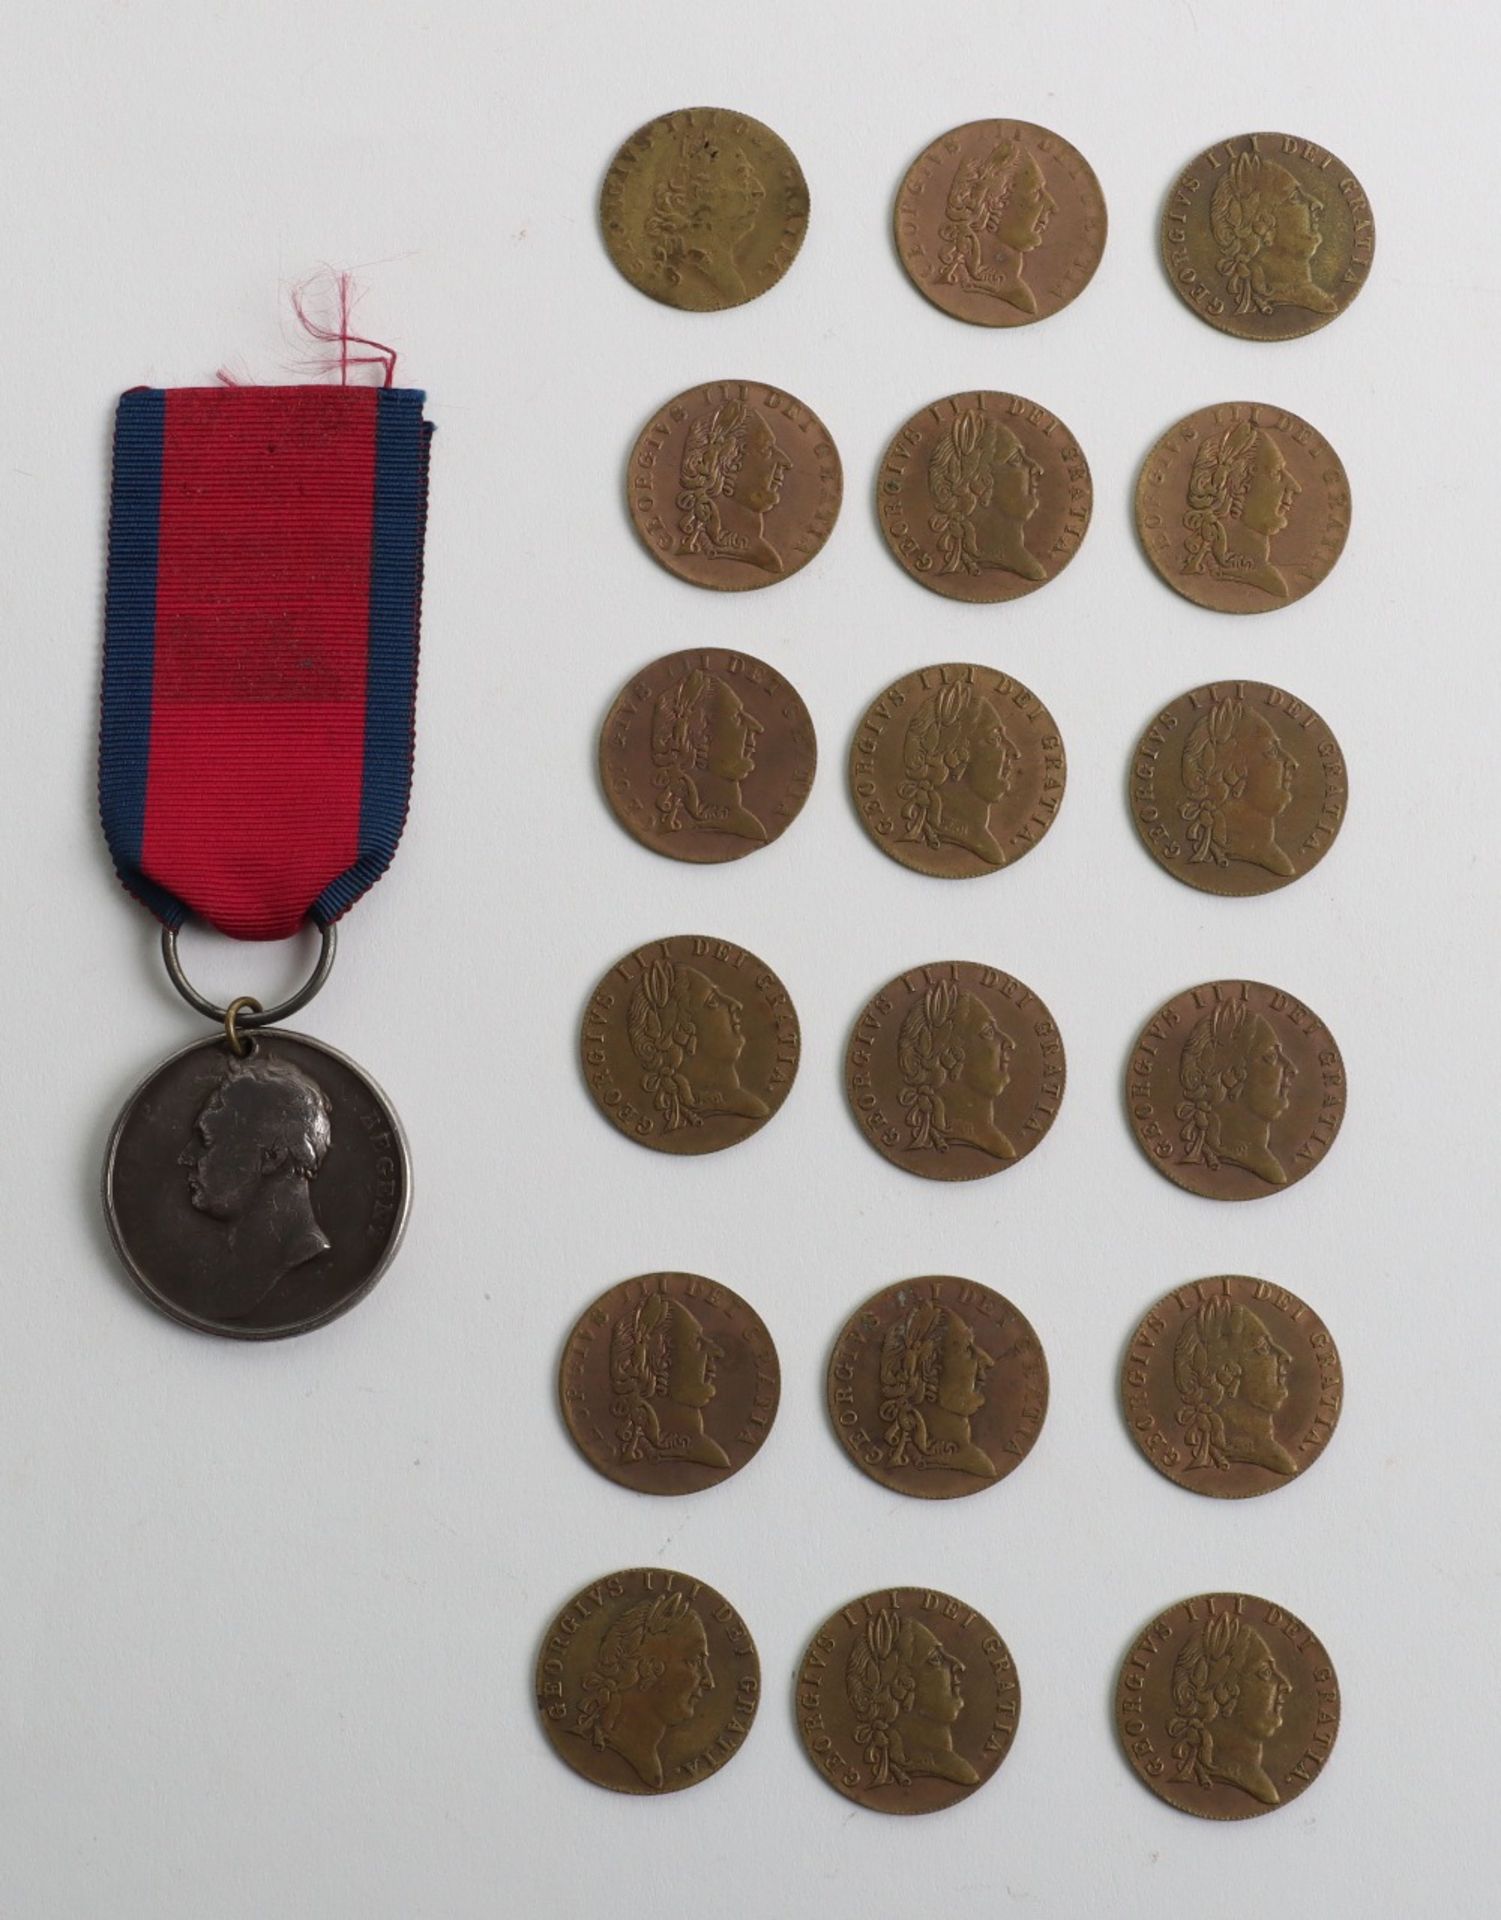 British 1815 Waterloo Medal - Image 7 of 7